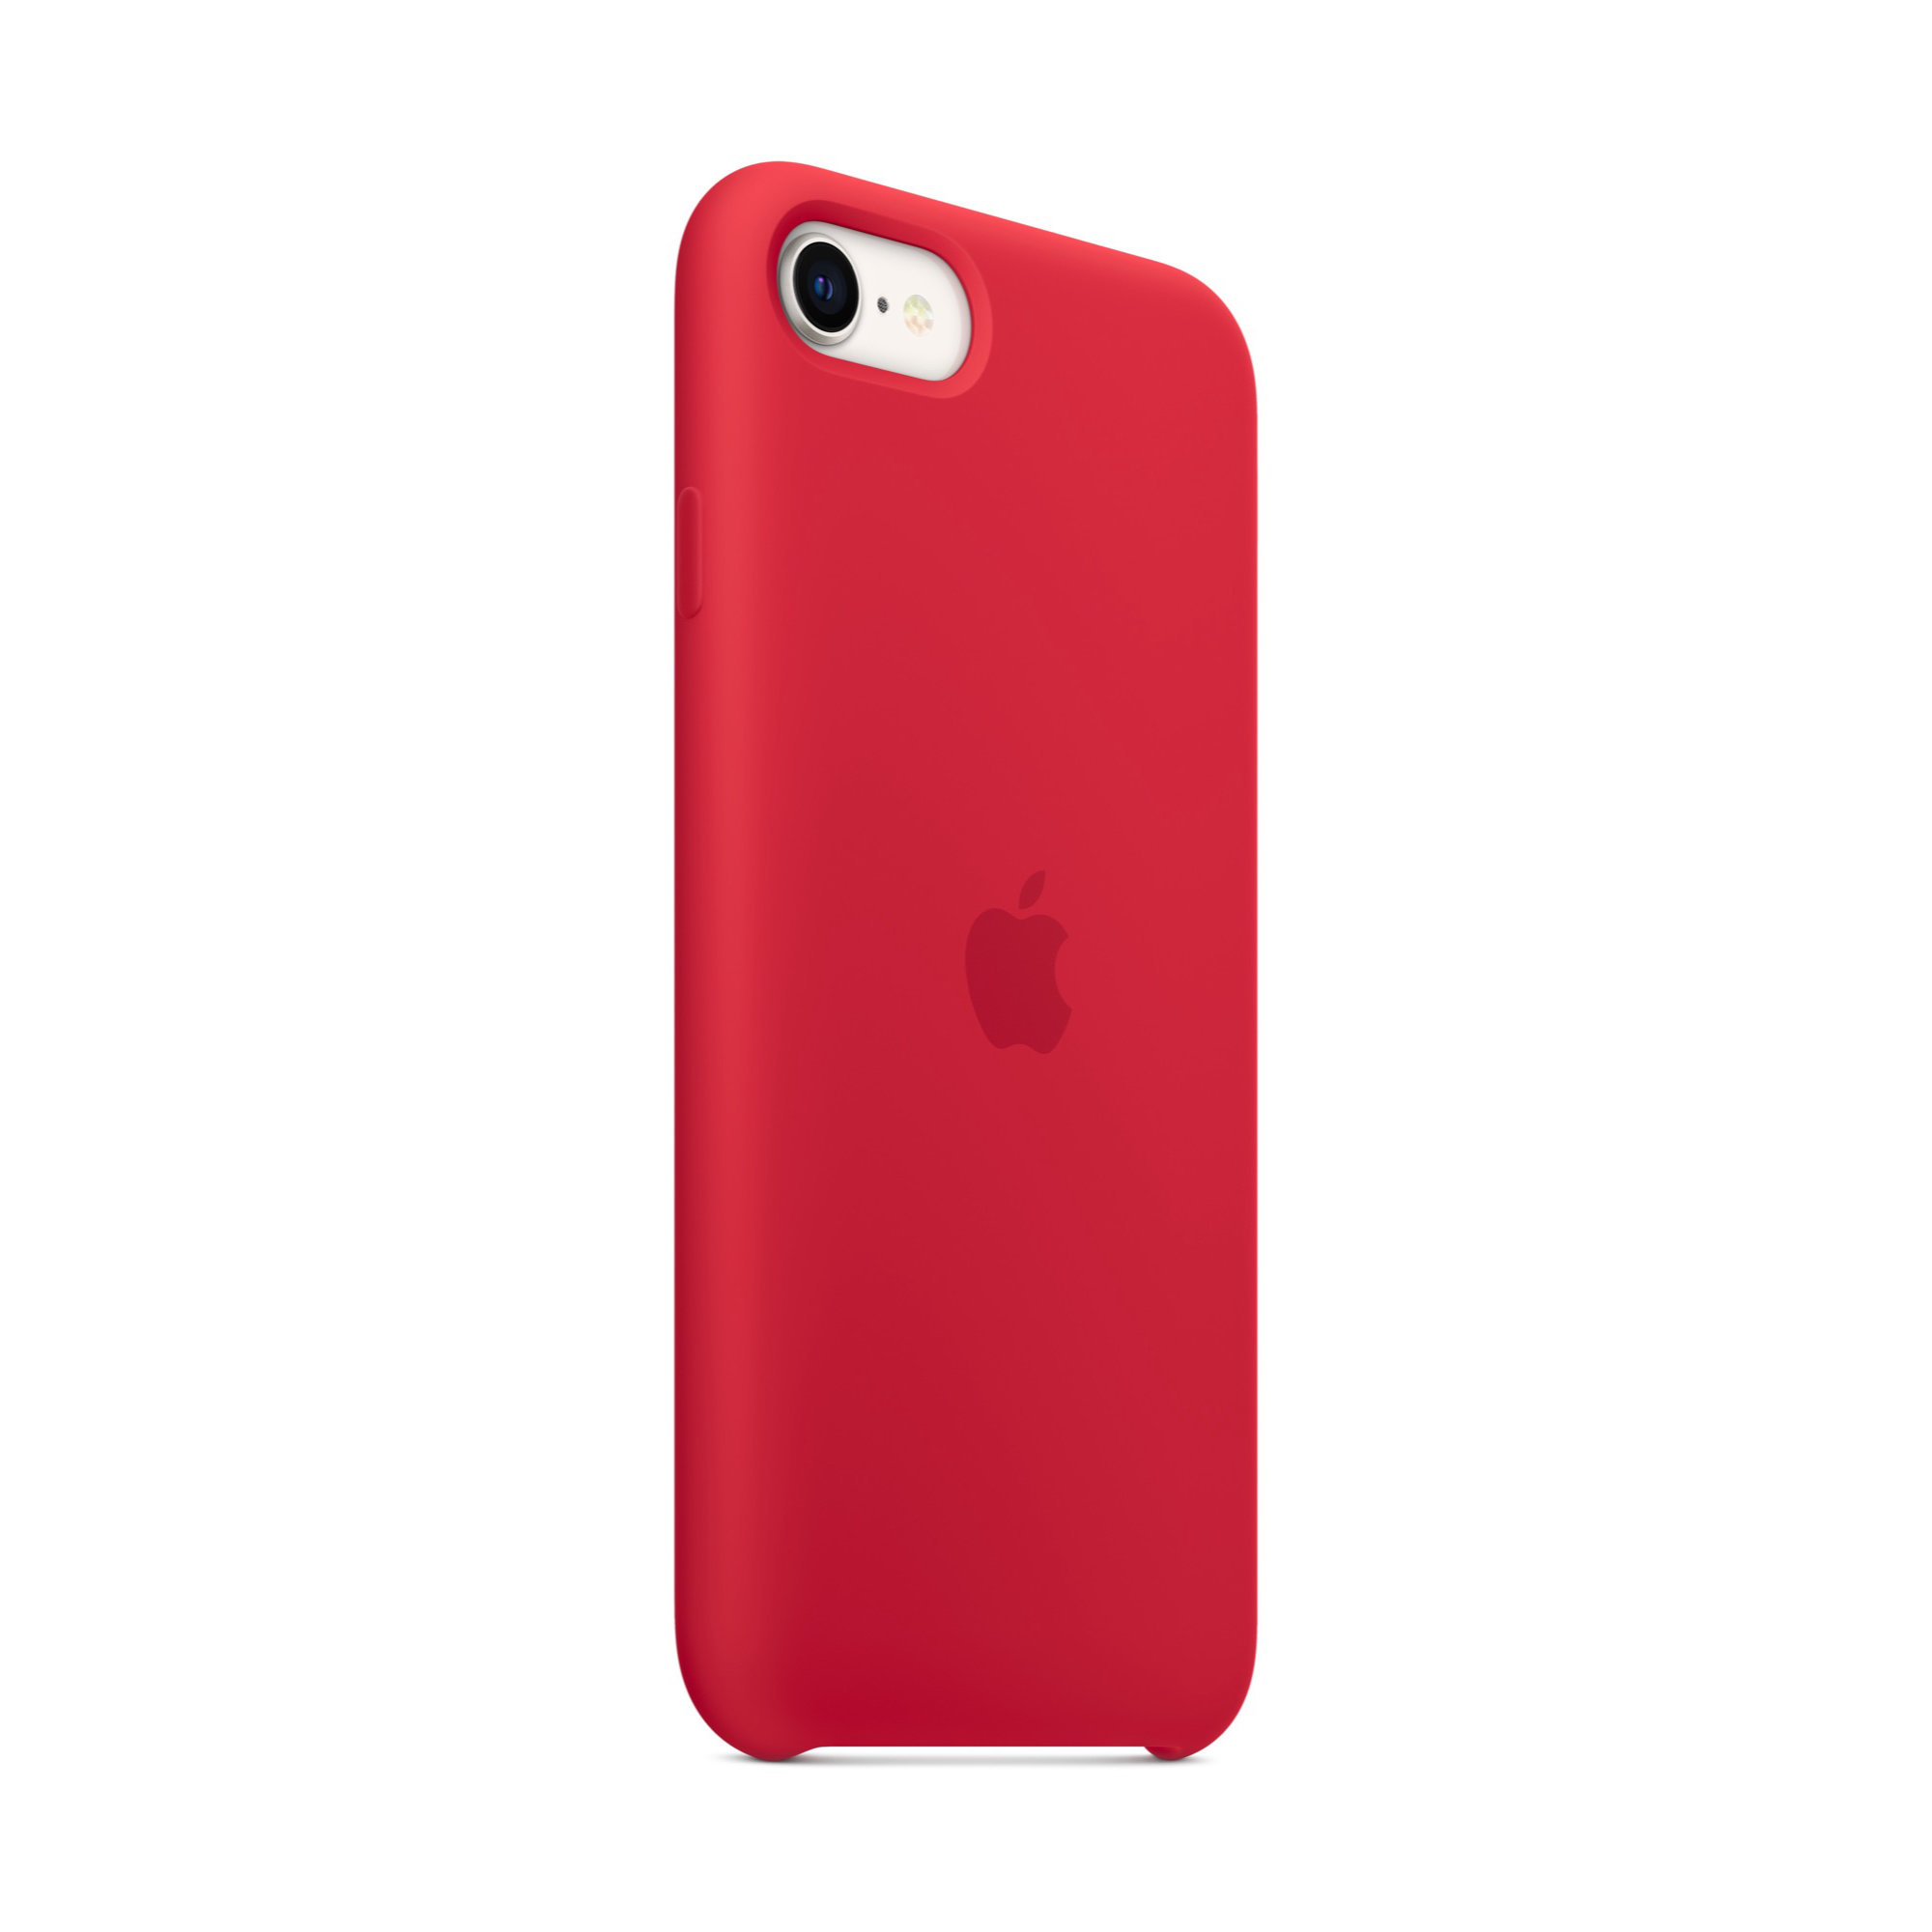 iPhone SE szilikontok - (PRODUCT)RED